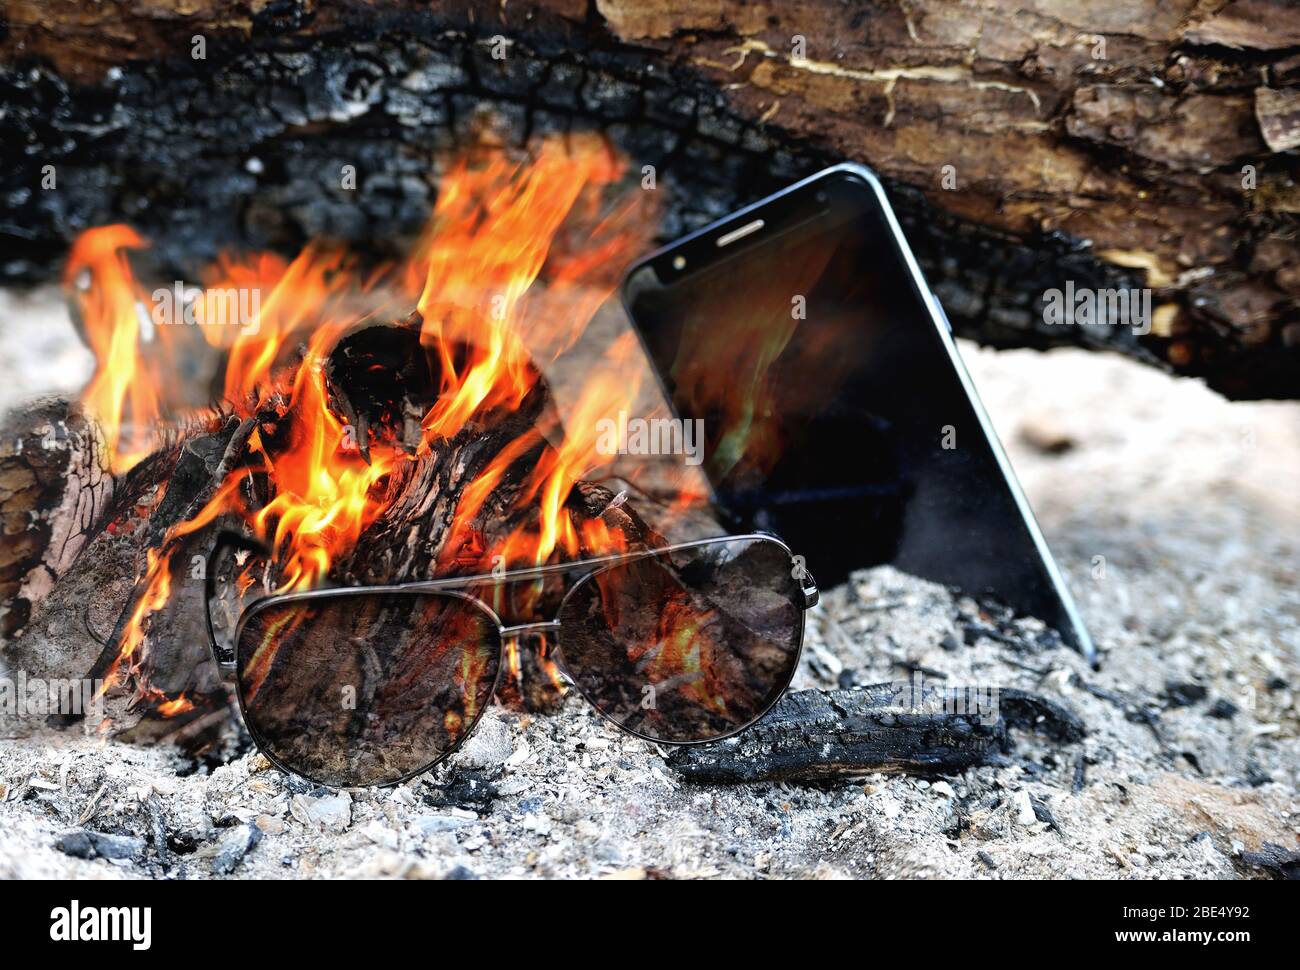 Sonnenbrille und Telefon brennen in der hellen Flamme des Feuers, Esche Brennholz Nahaufnahme Stockfoto